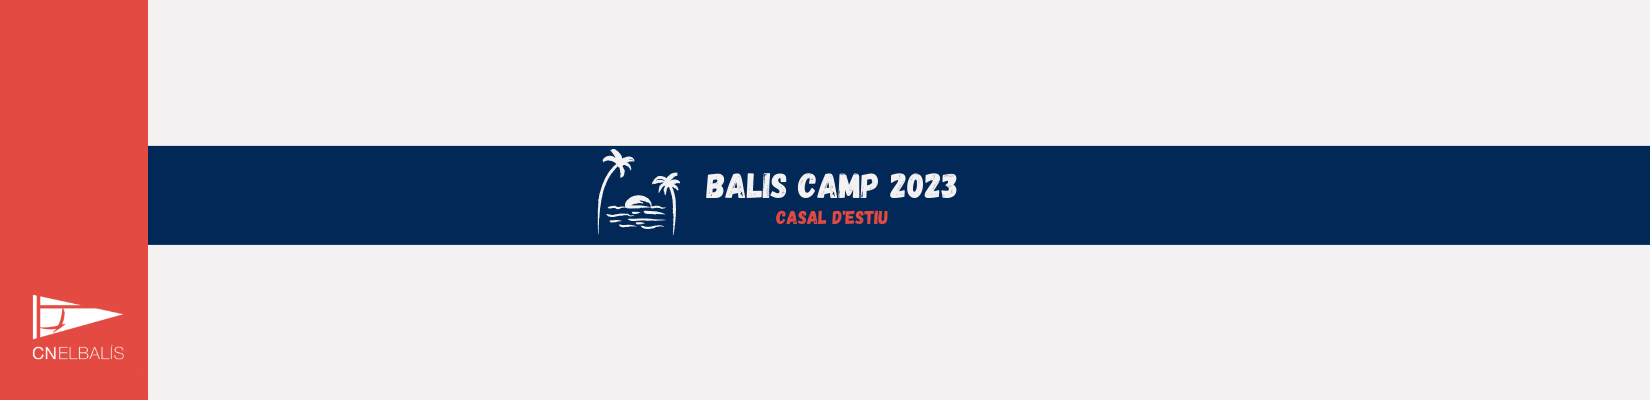 BALIS CAMP 2023 CAMPUS D'ESTIU